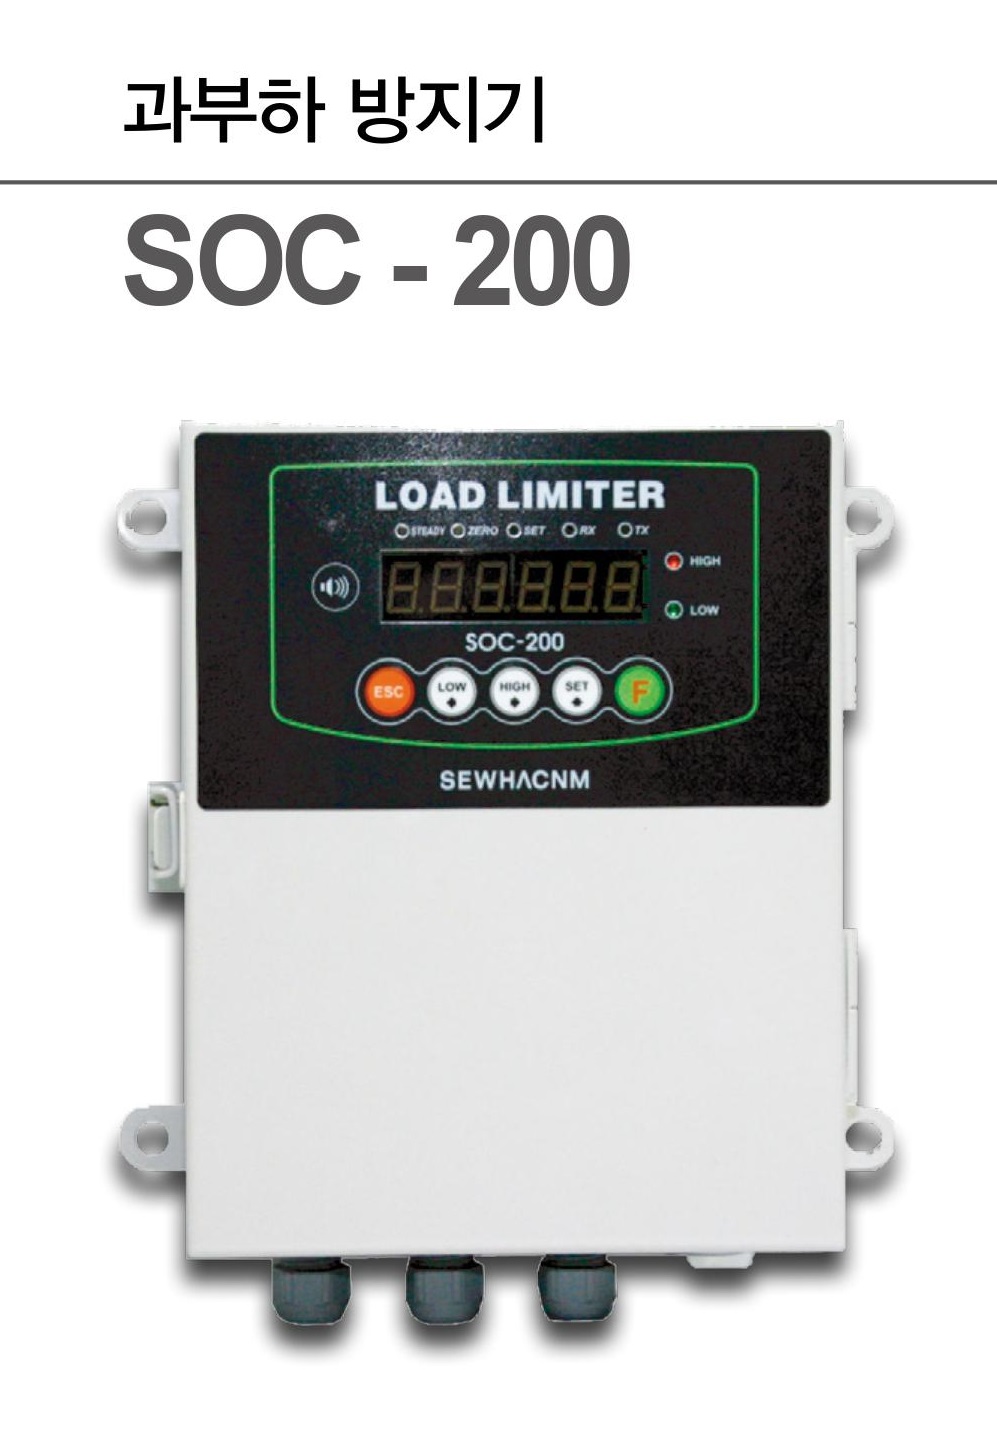 SOC-200